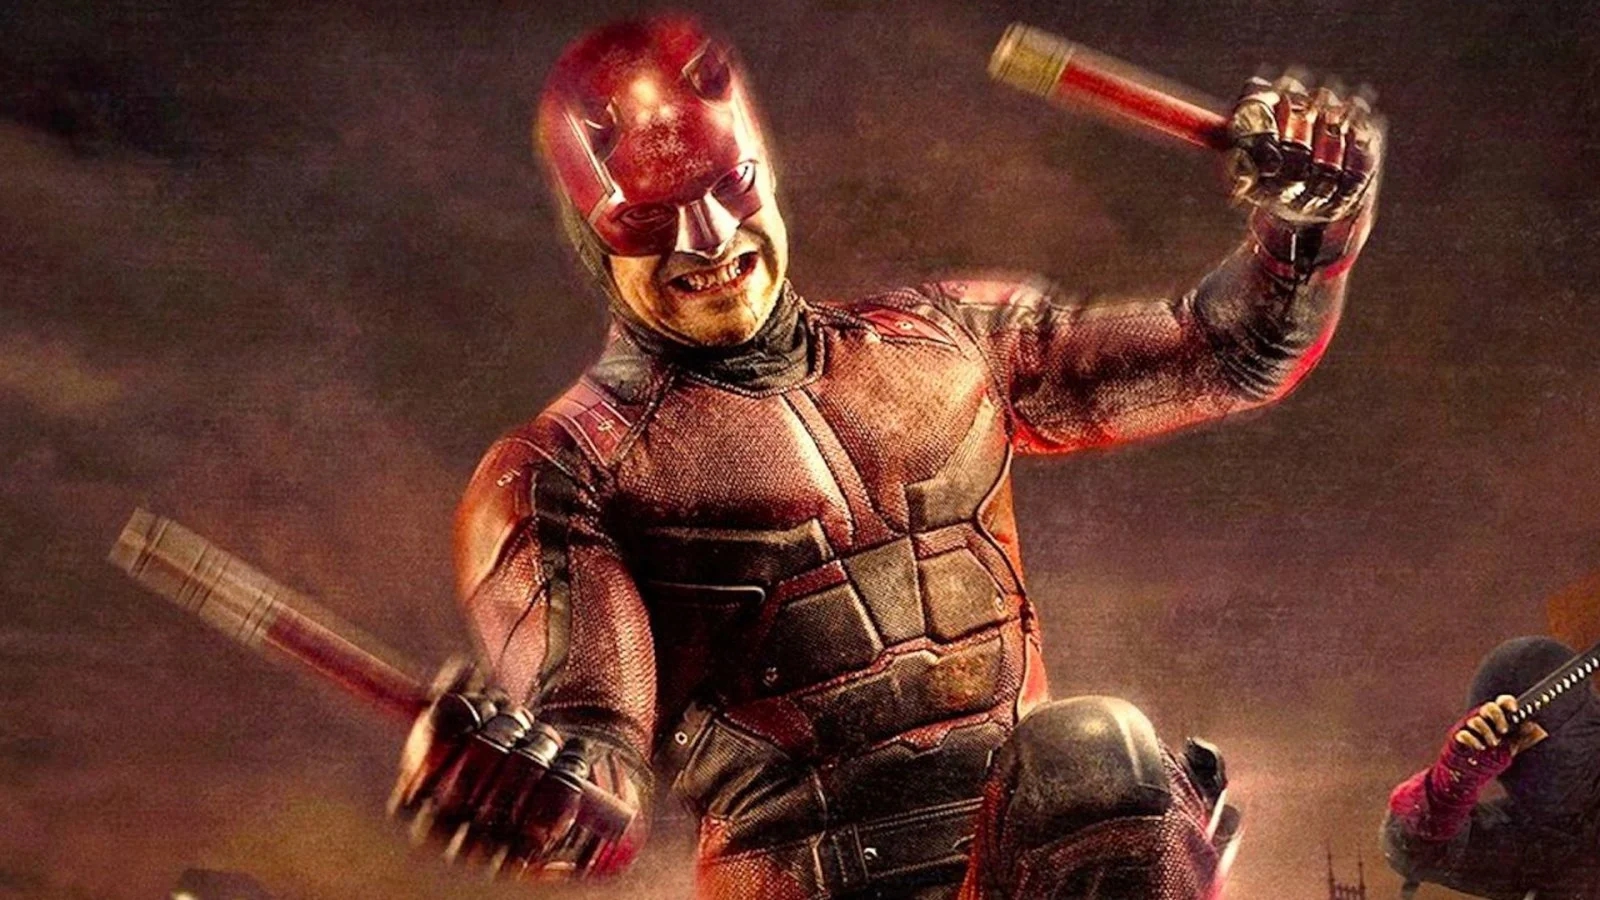 Daredevil: Born Again, ripartono le riprese, svelato il legame con la serie Netflix The Punisher?